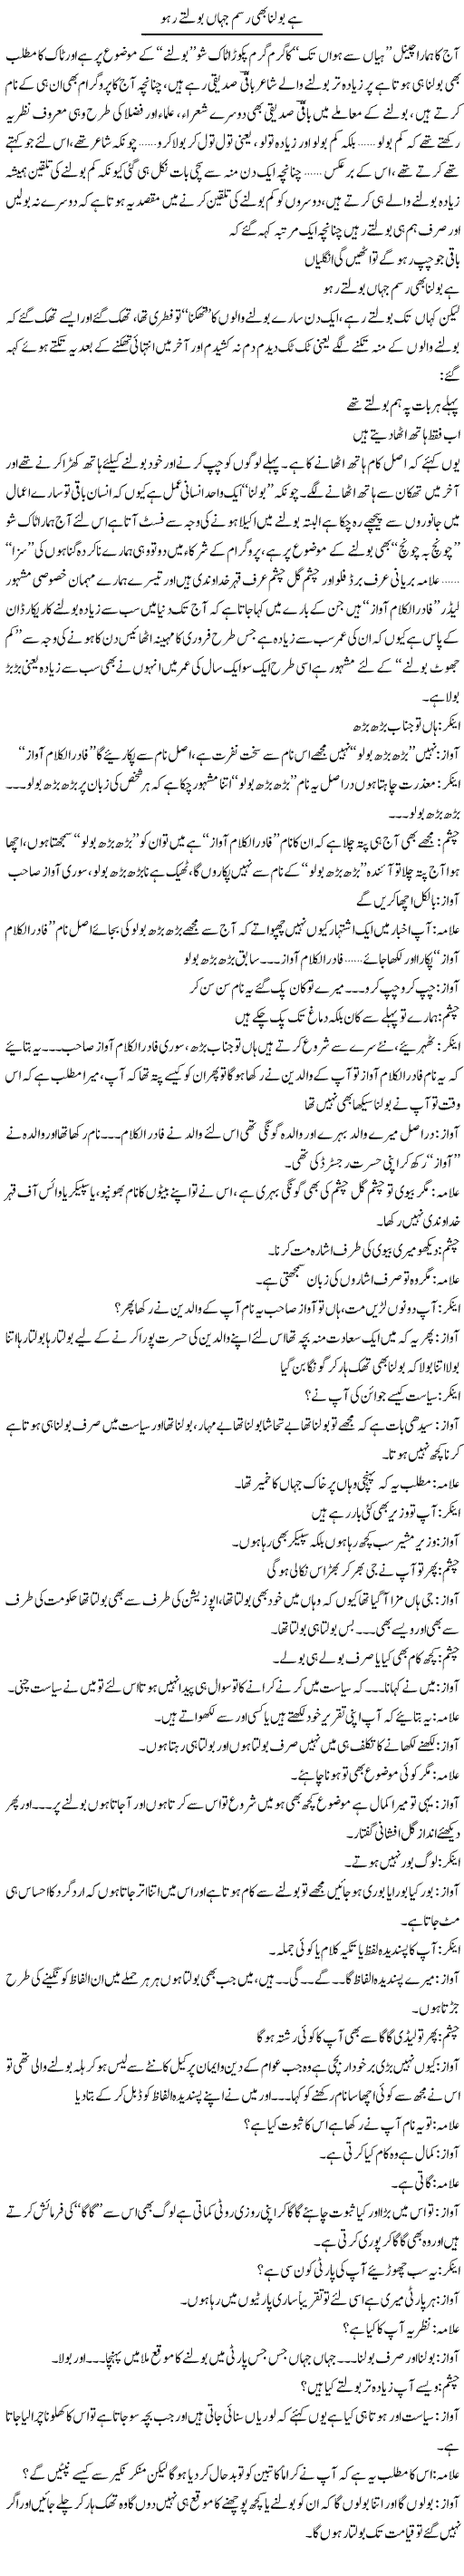 Hai Bona B Rasm e Jahan Bolte Raho | Saad Ullah Jan Barq | Daily Urdu Columns